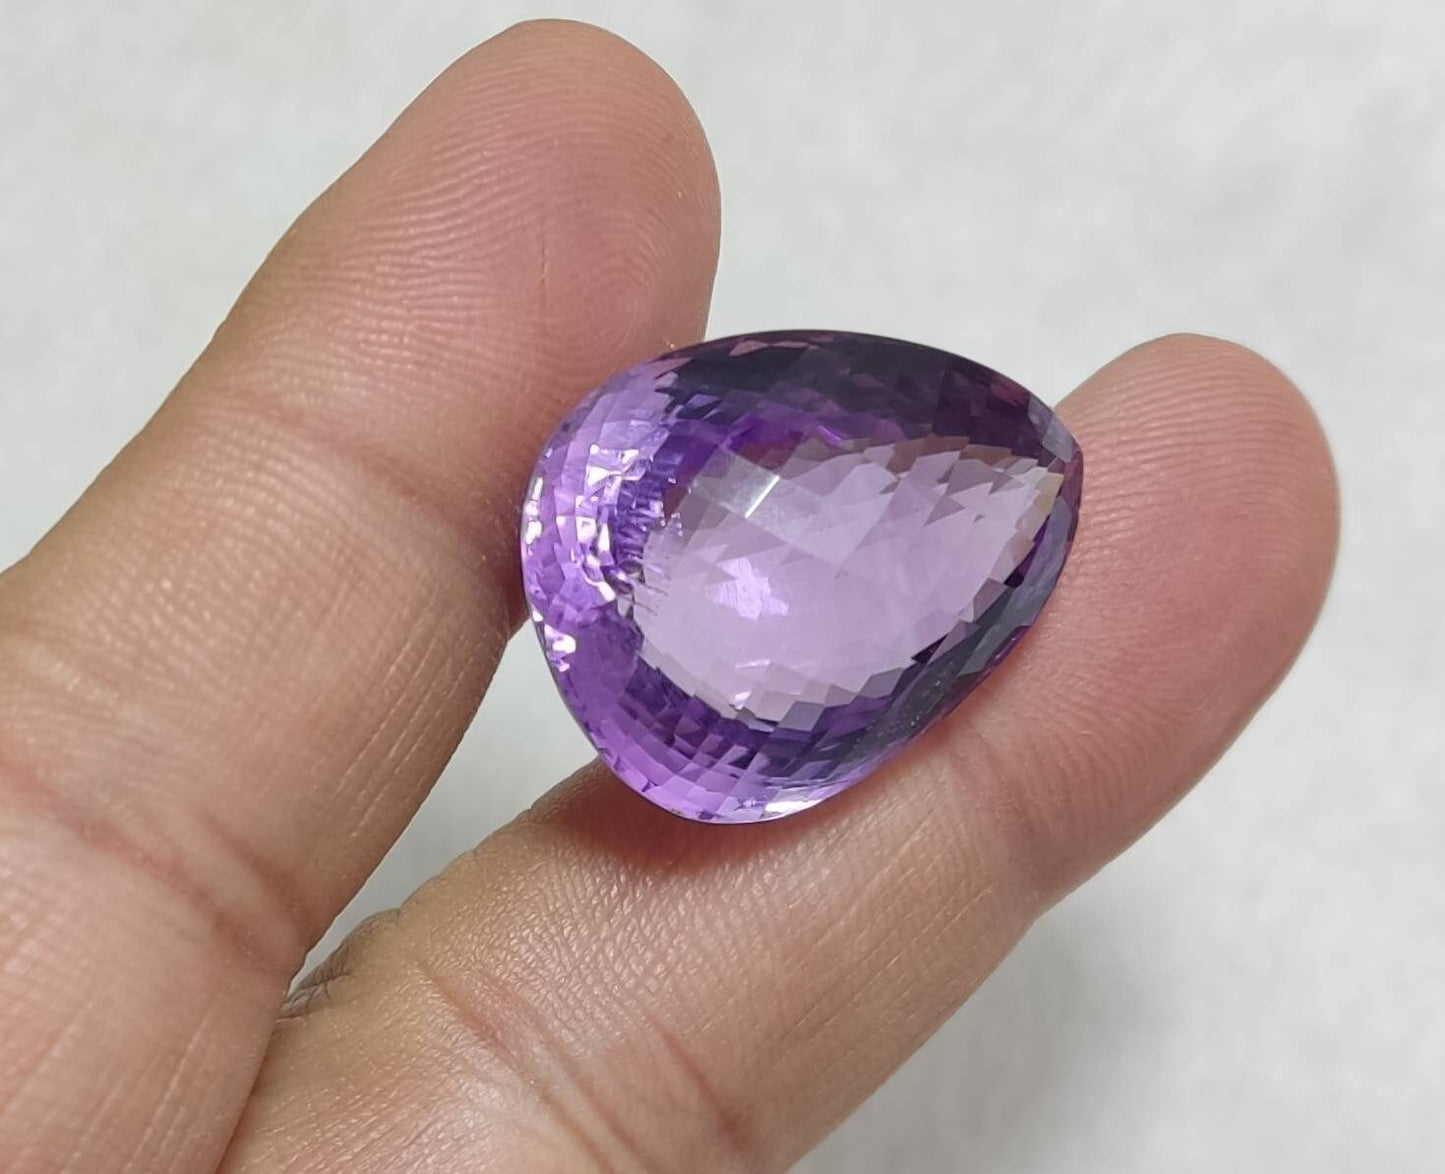 An amazing tear drop cut faceted amethyst gemstone 44 carats